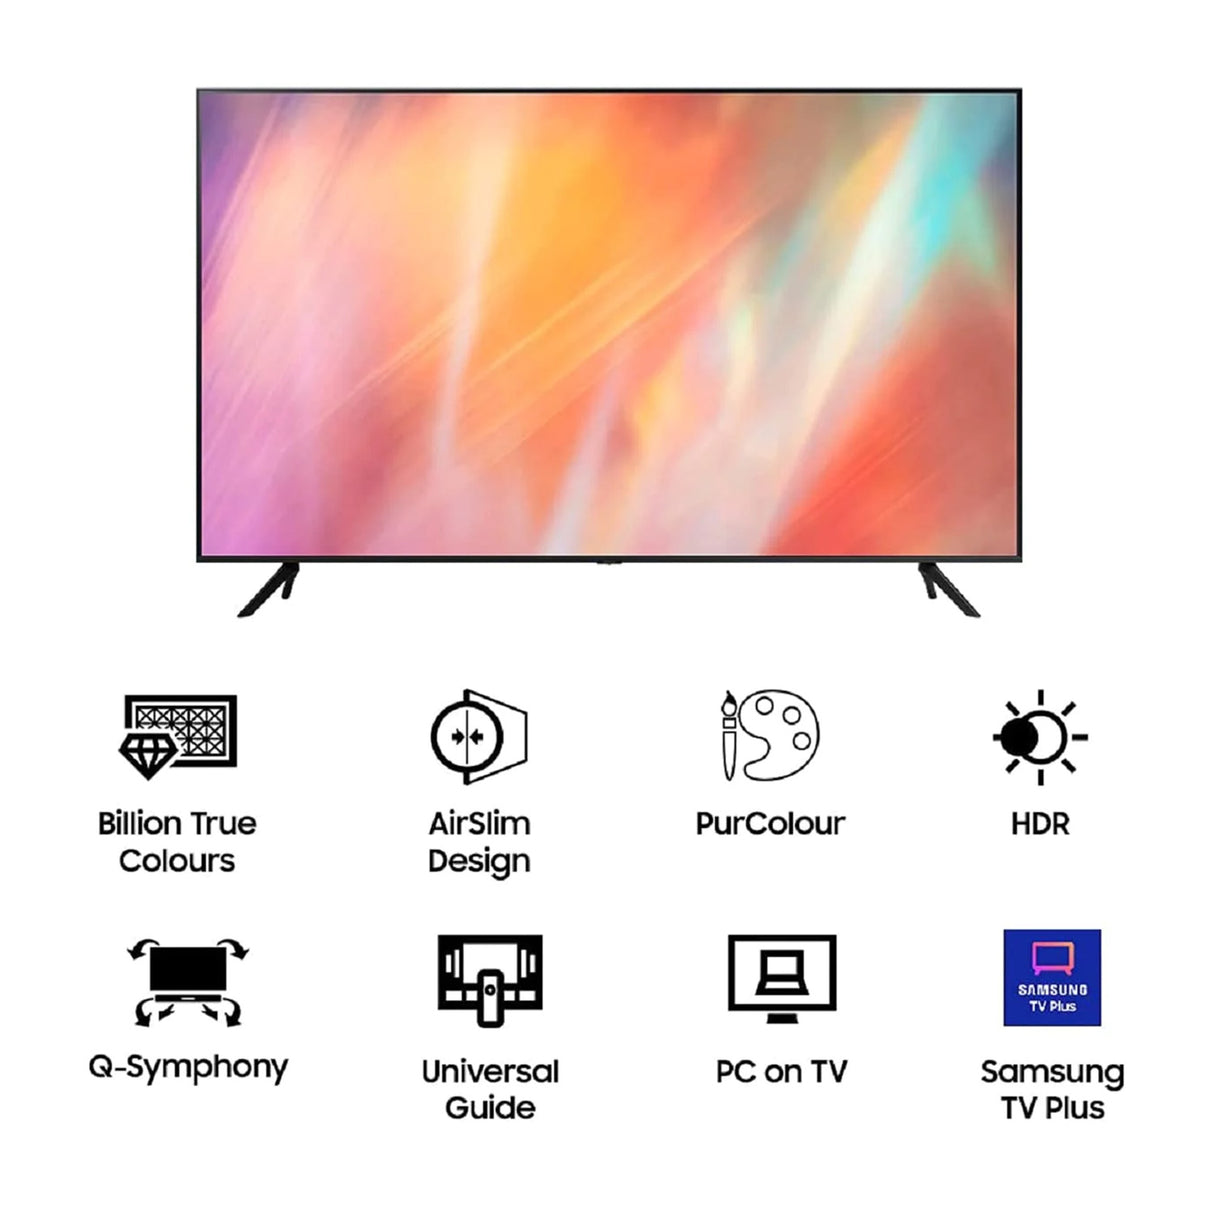 Smart Television: Samsung 55" 4K Smart Tizen TV.